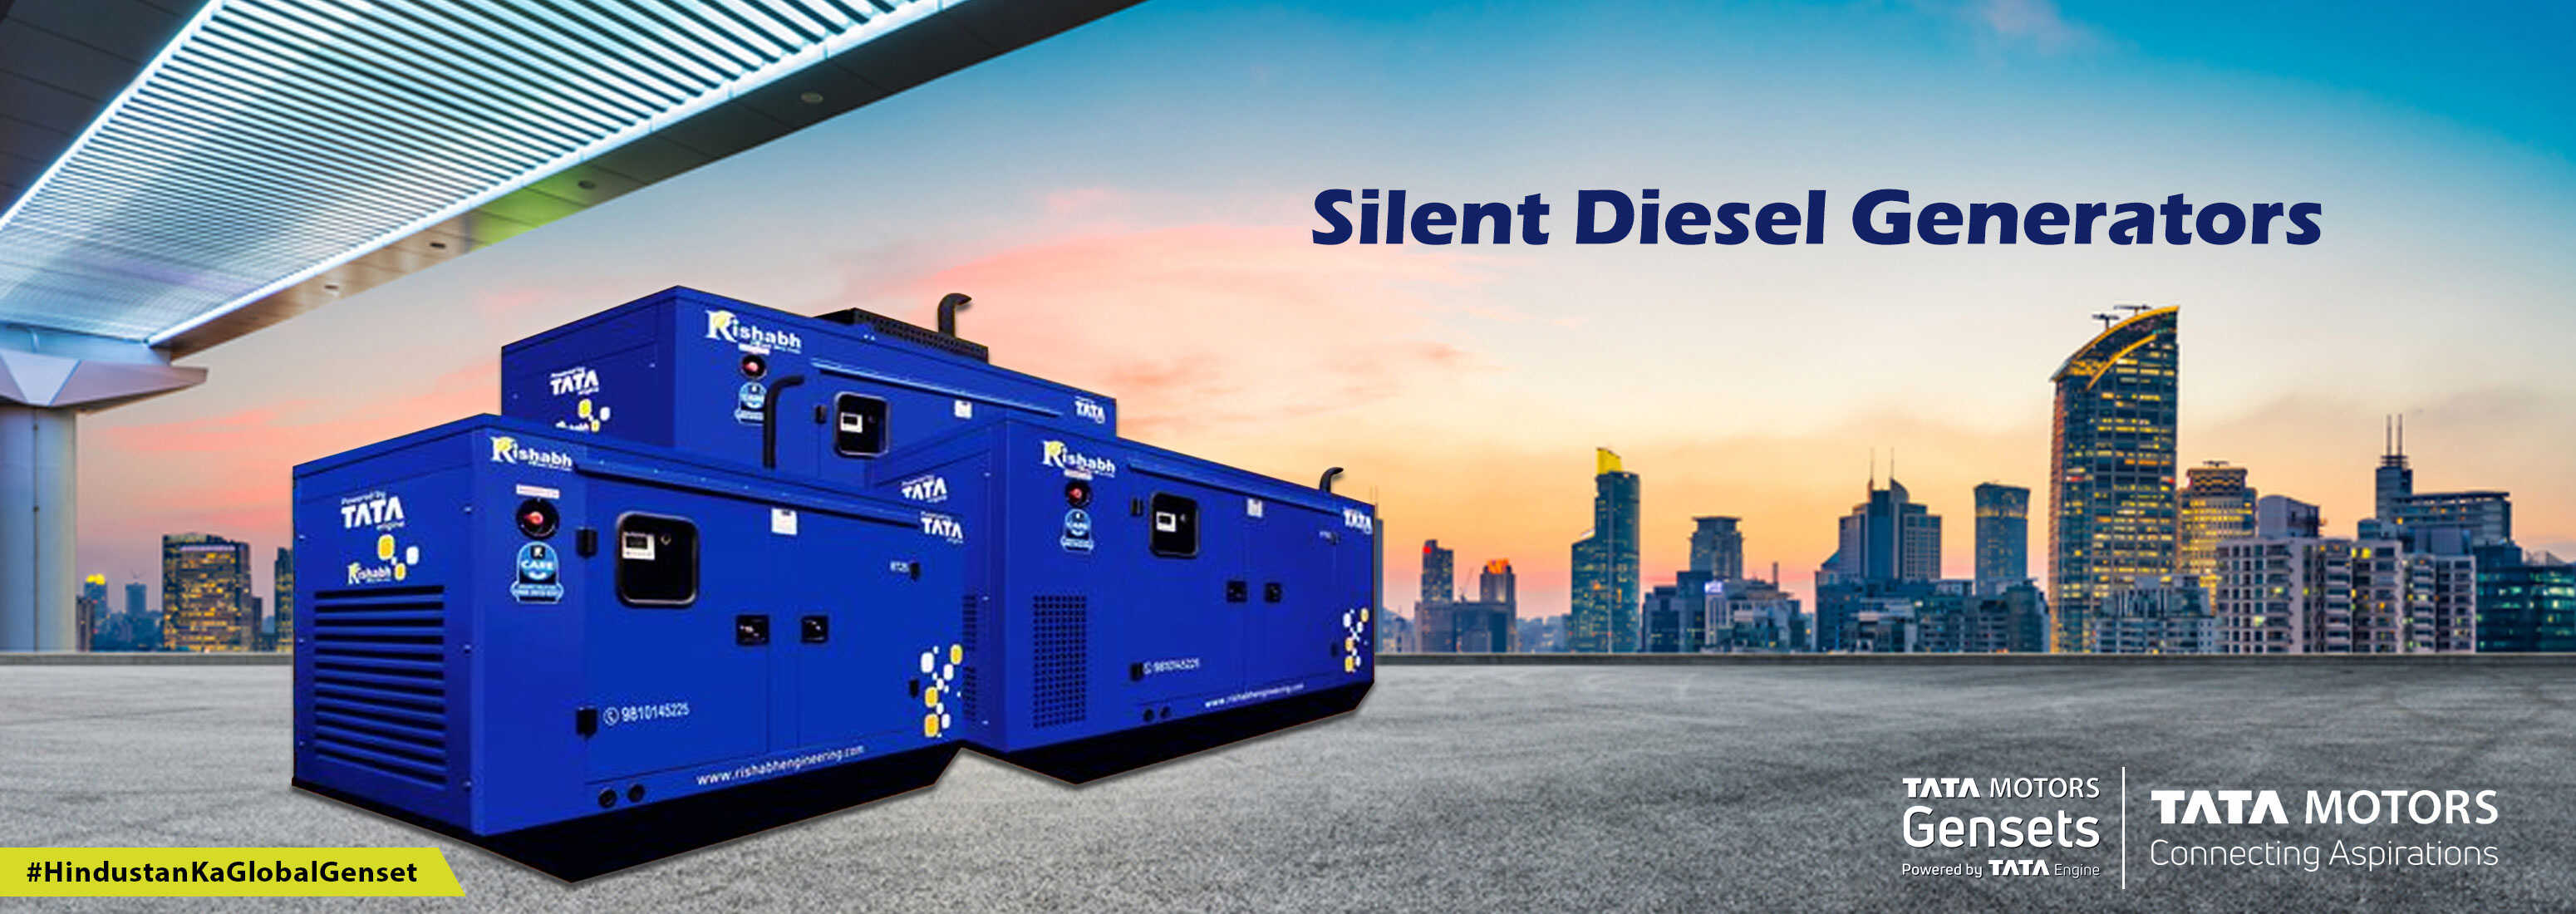 Silent diesel generator